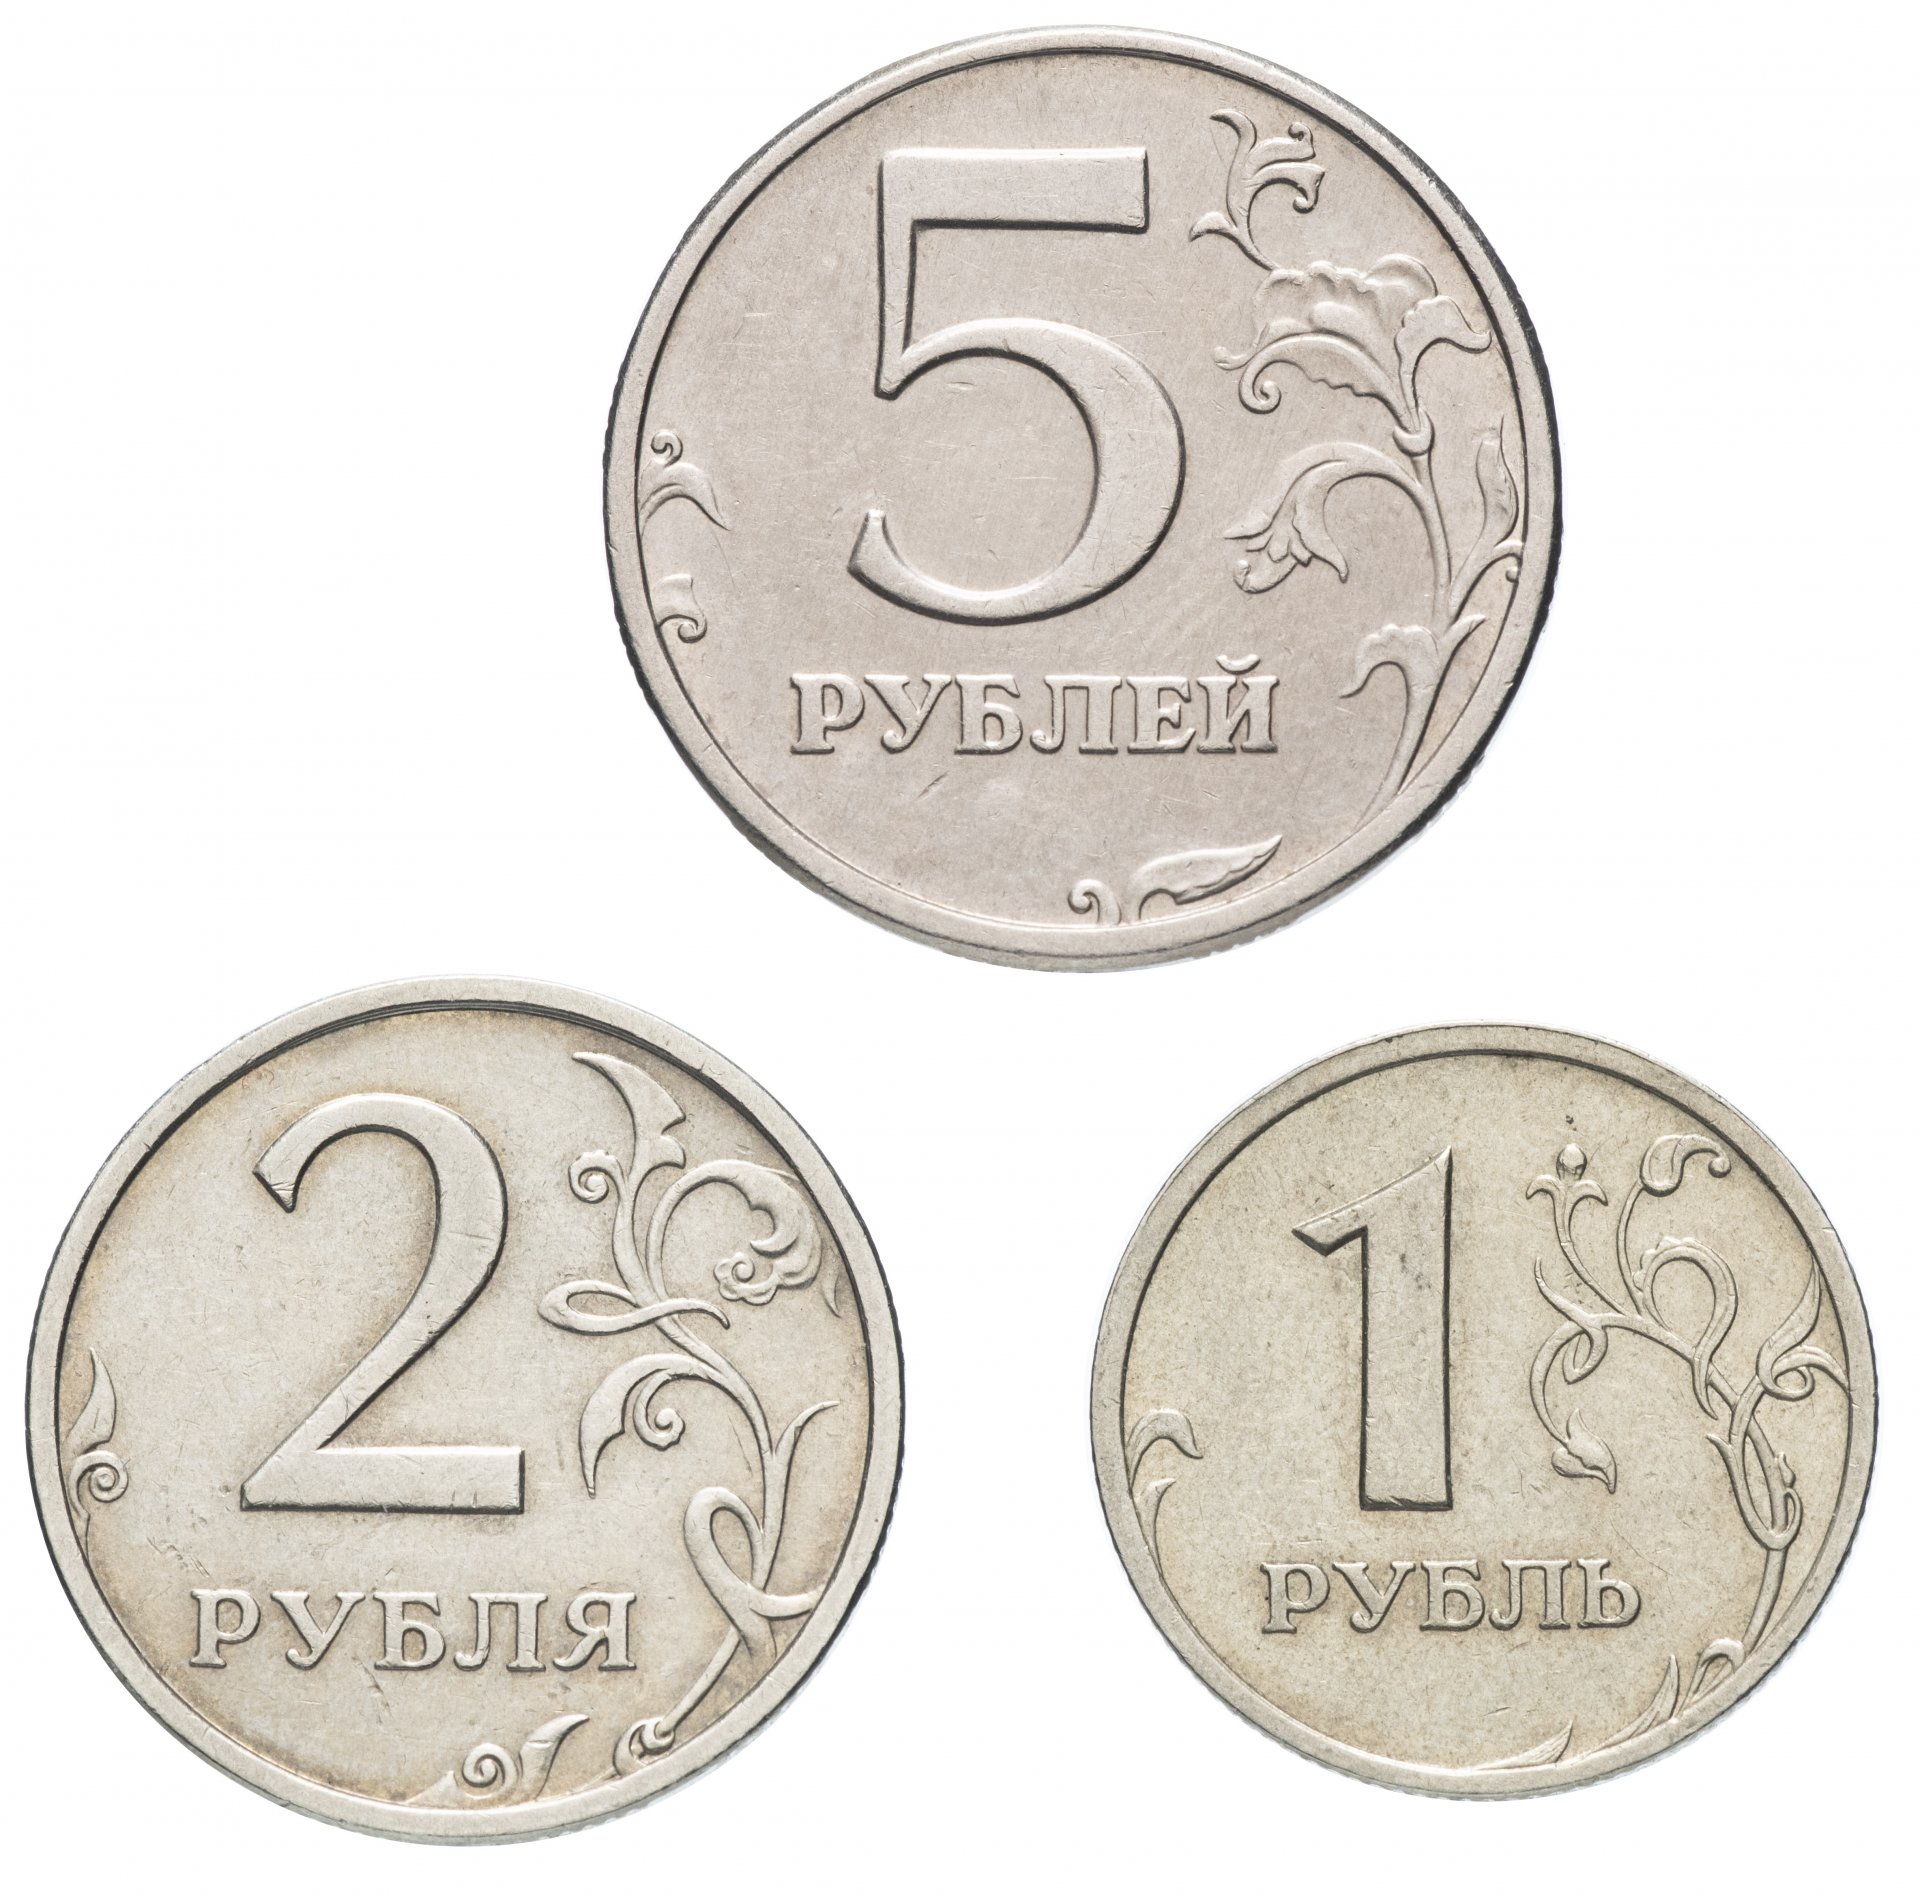 5 рублей материал. Монеты для детей. Монеты для распечатывания. Монета 5 рублей. Монеты для дошкольников.